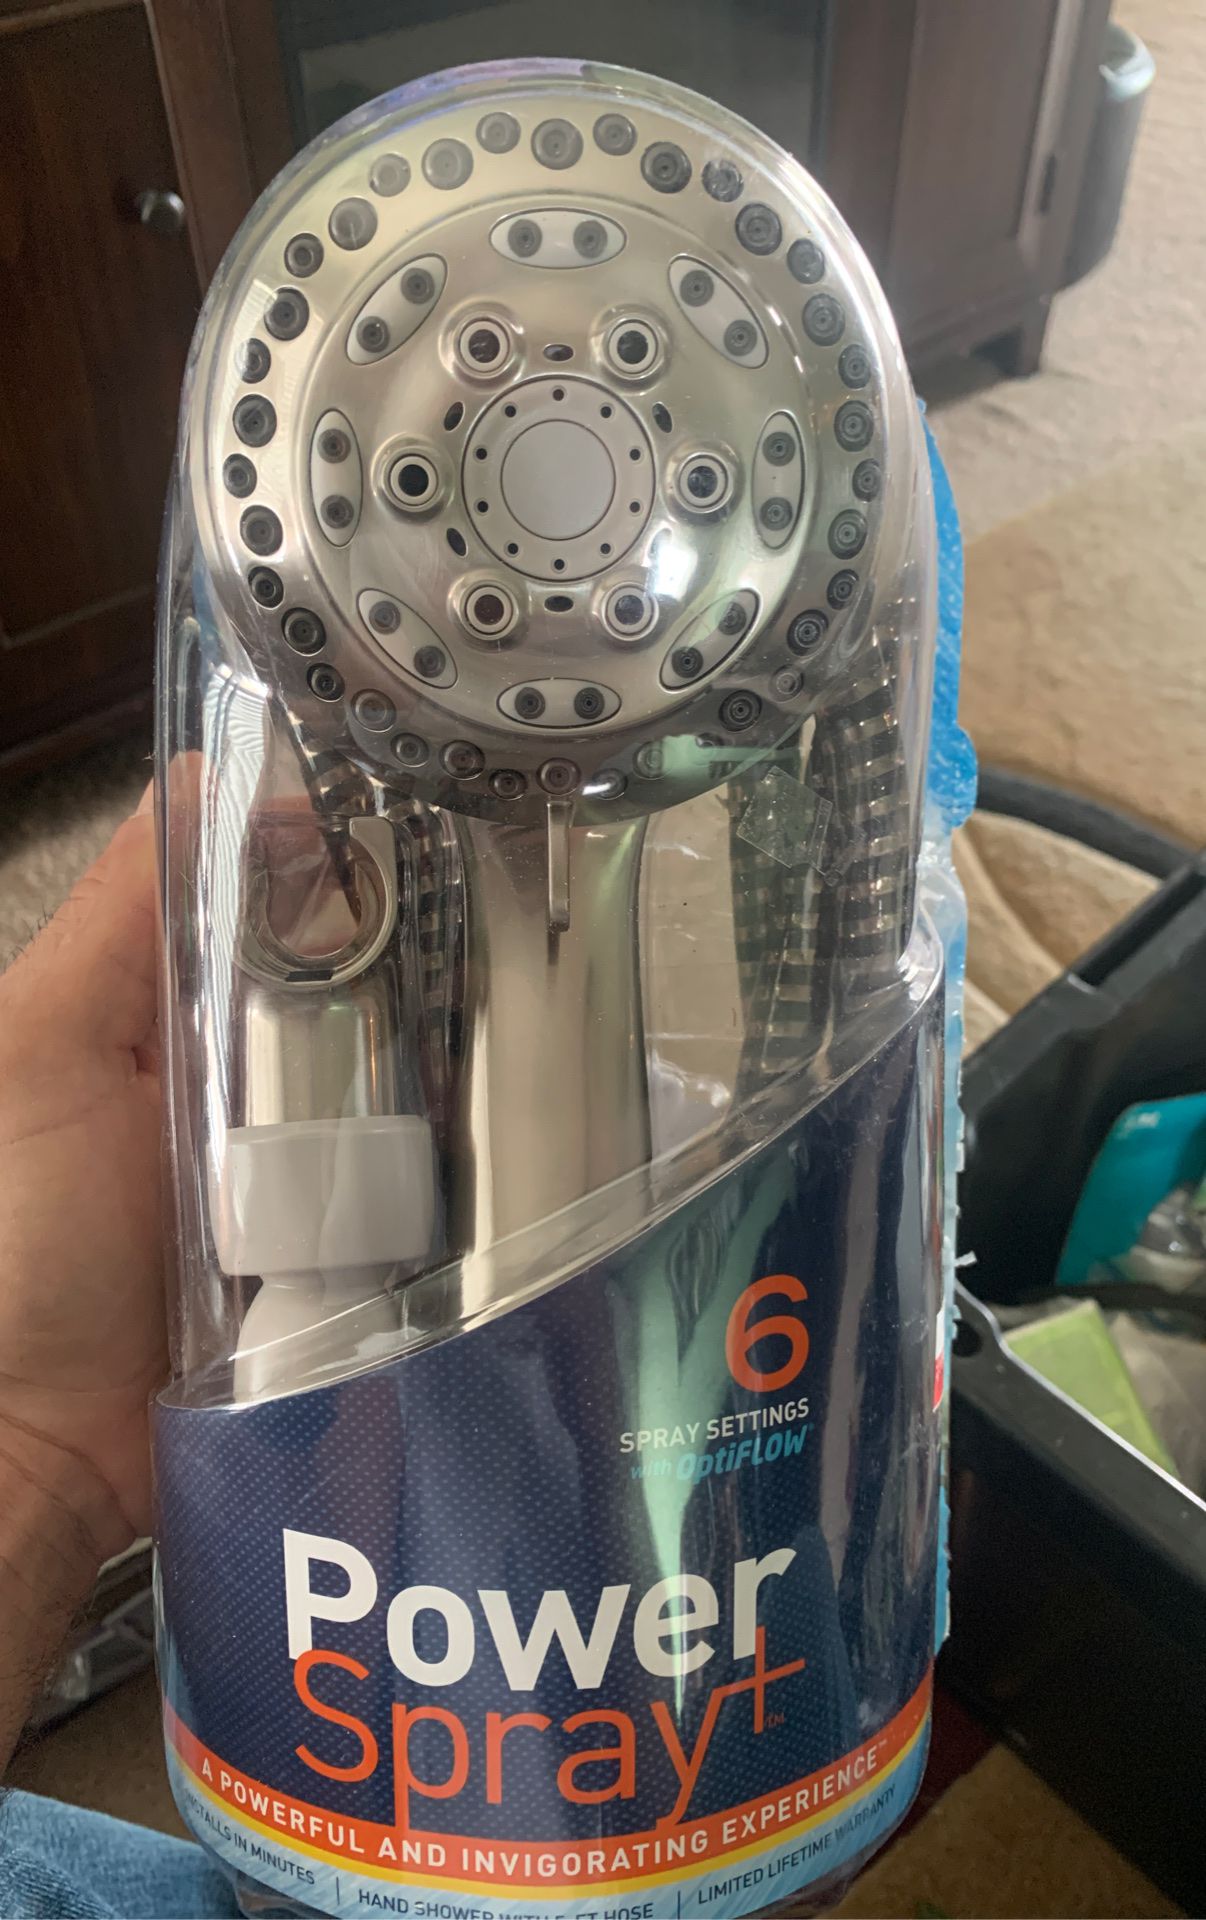 Power sprayer shower head